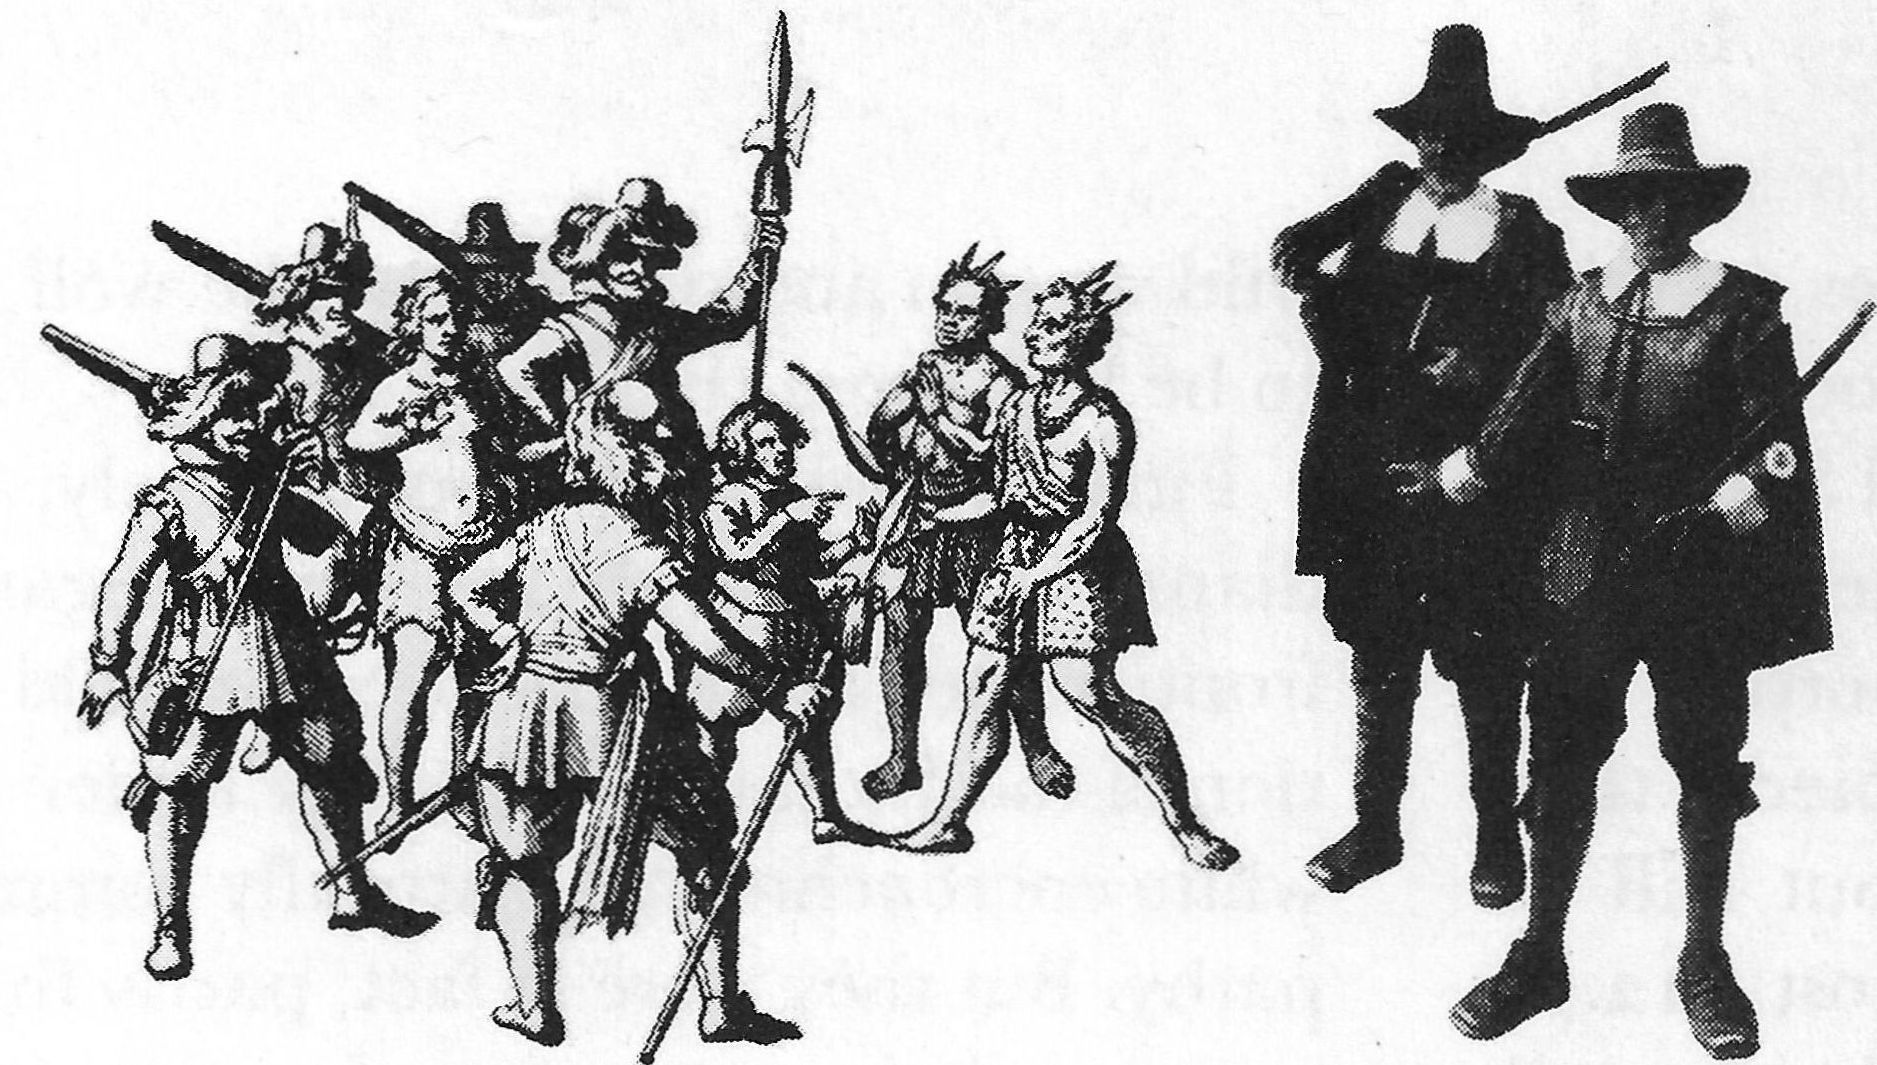 Guns at Jamestown and Puritan New England